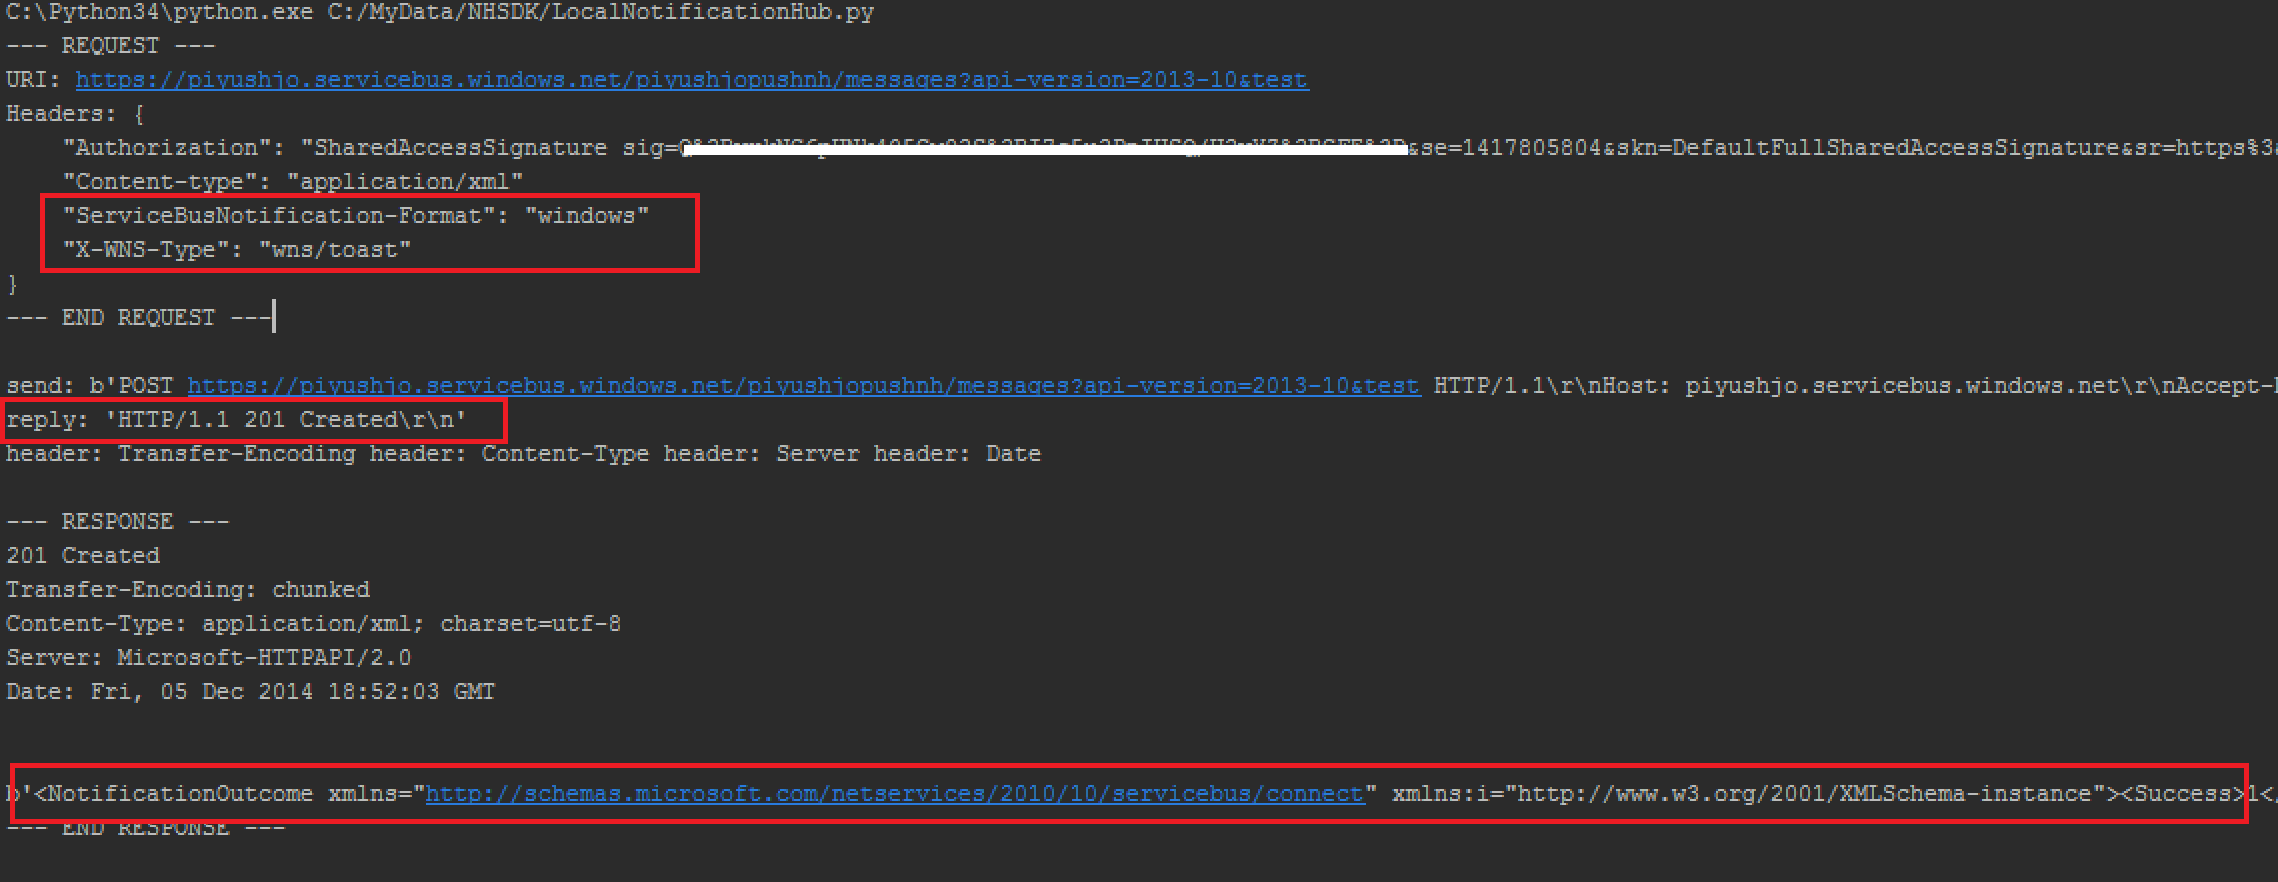 Screenshot di una console con i dettagli della richiesta H T T P e dei messaggi di dump della risposta e del risultato della notifica descritti in rosso.